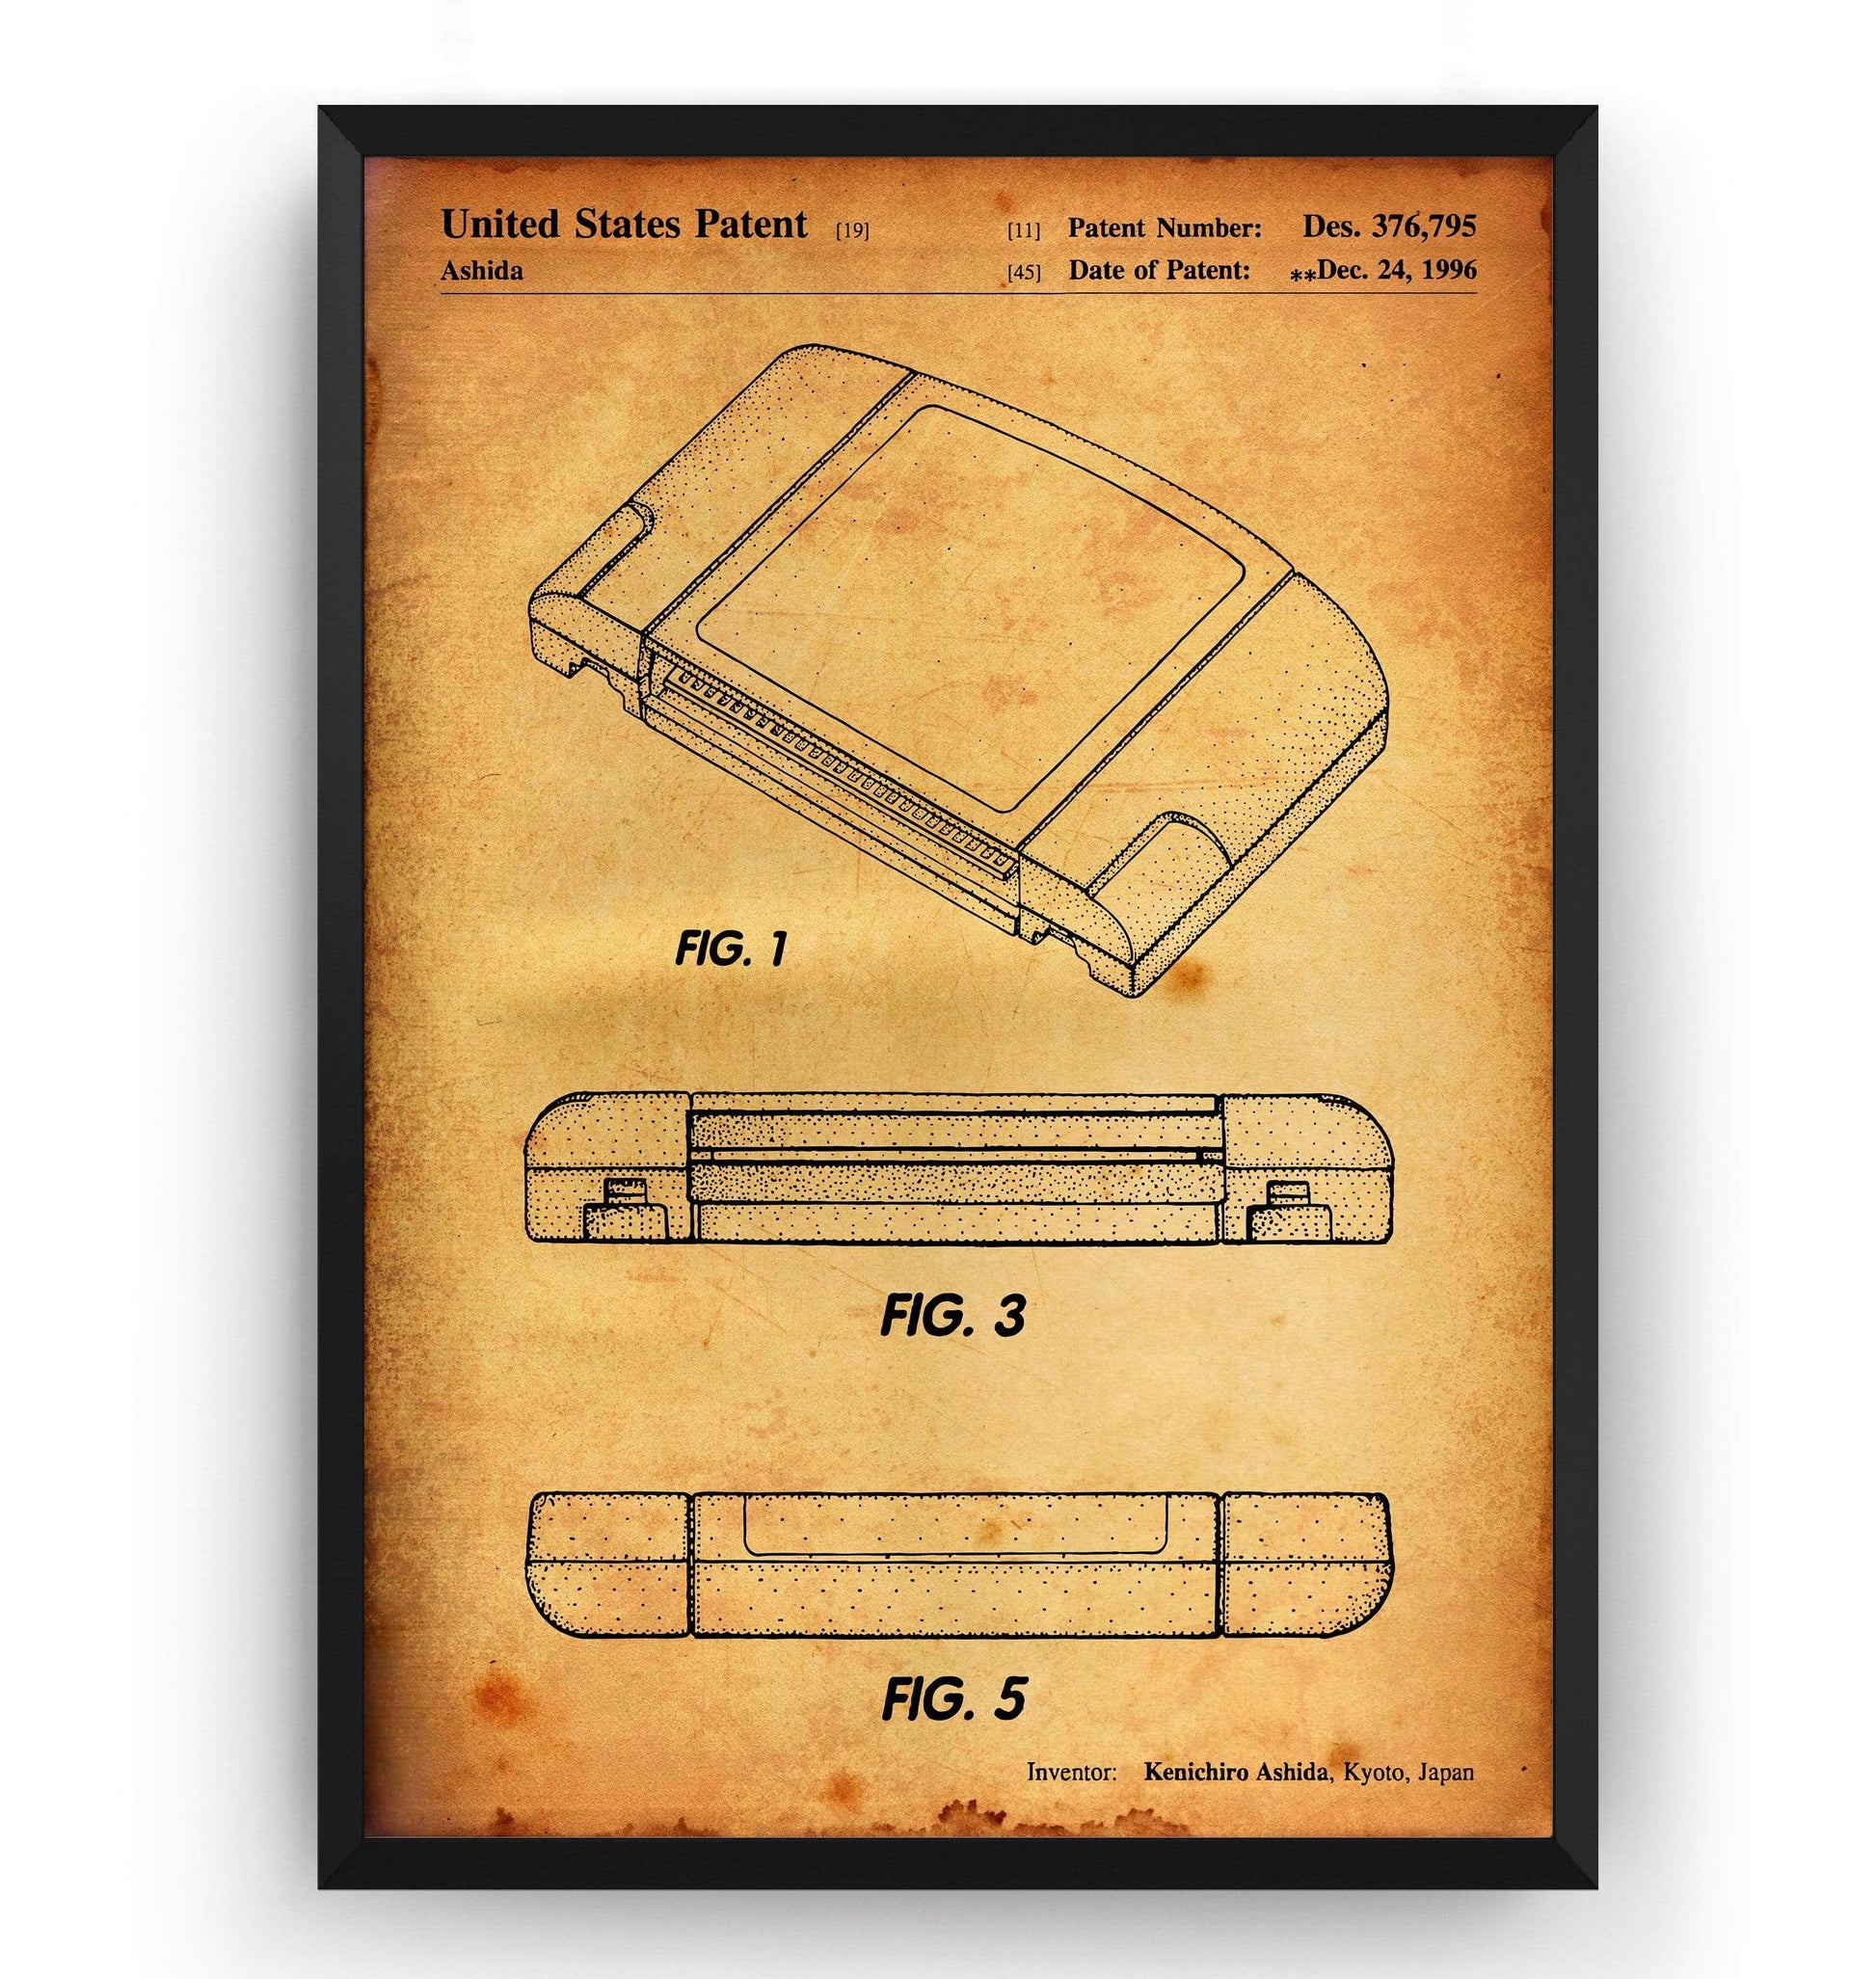 N64 Cartridge 1996 Patent Print - Magic Posters